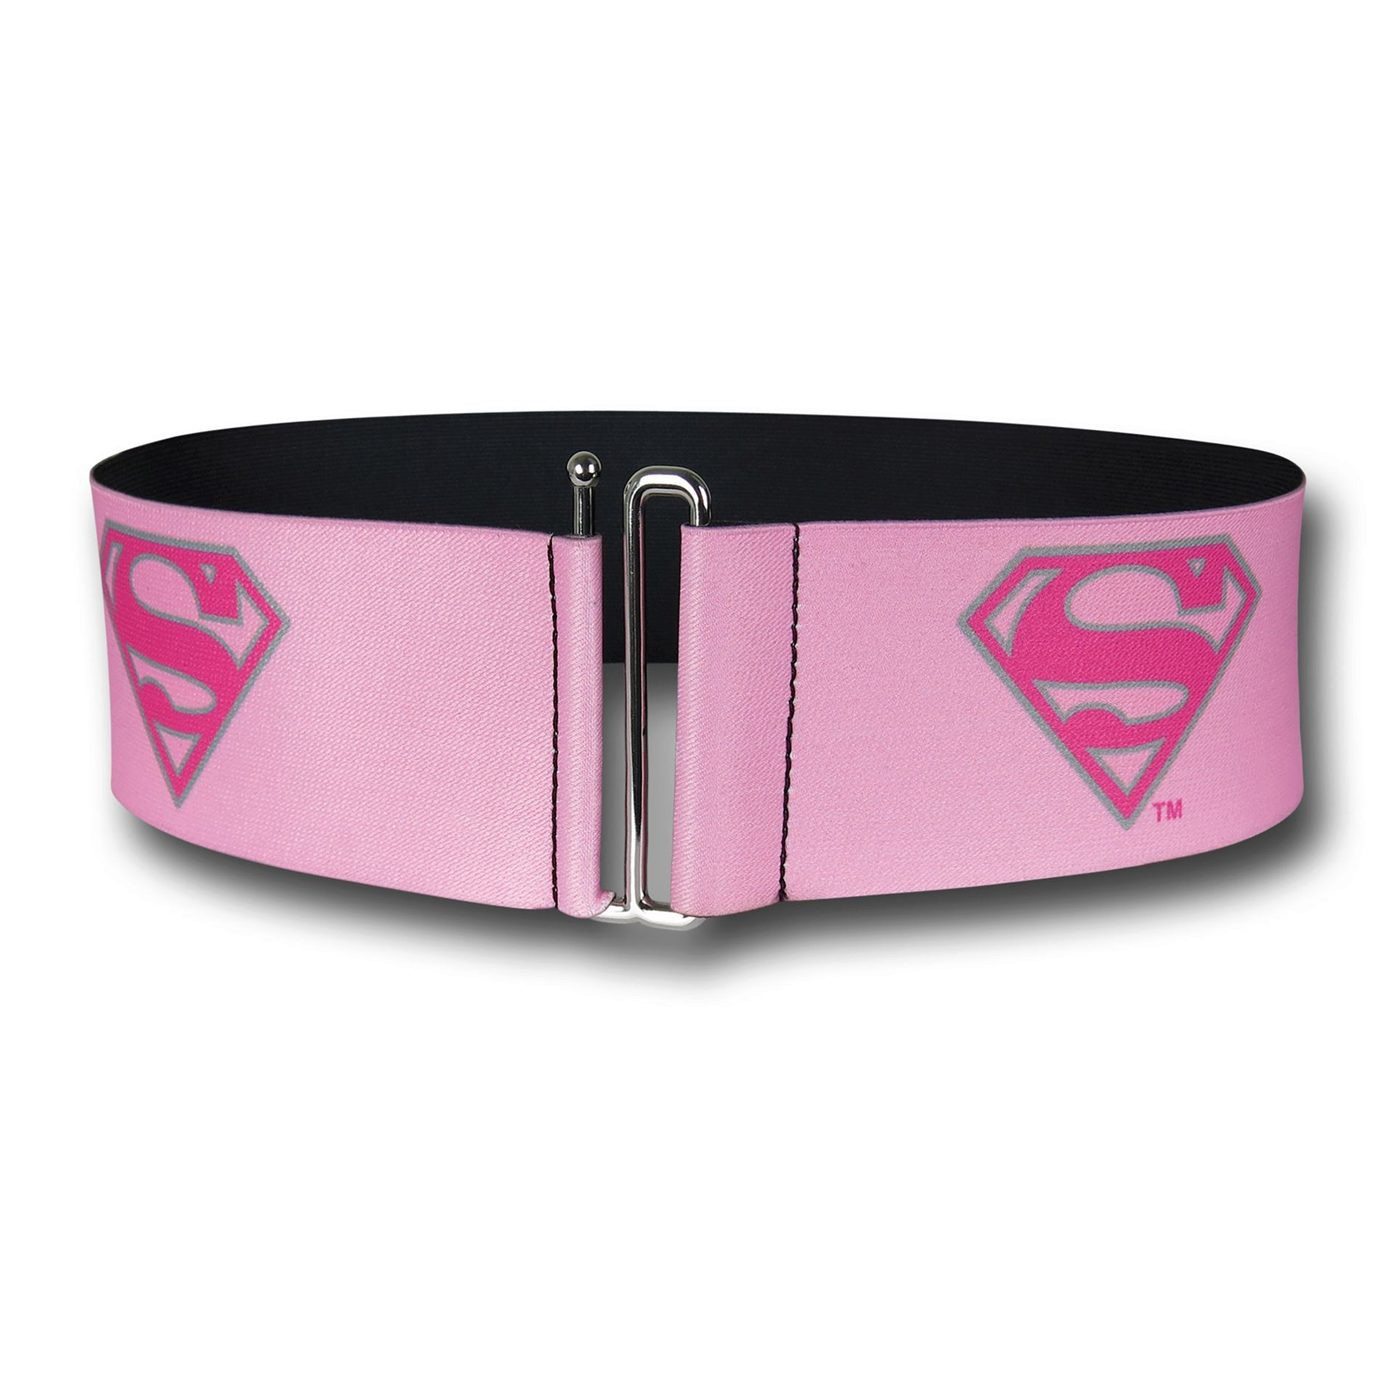 Supergirl Cinch Belt